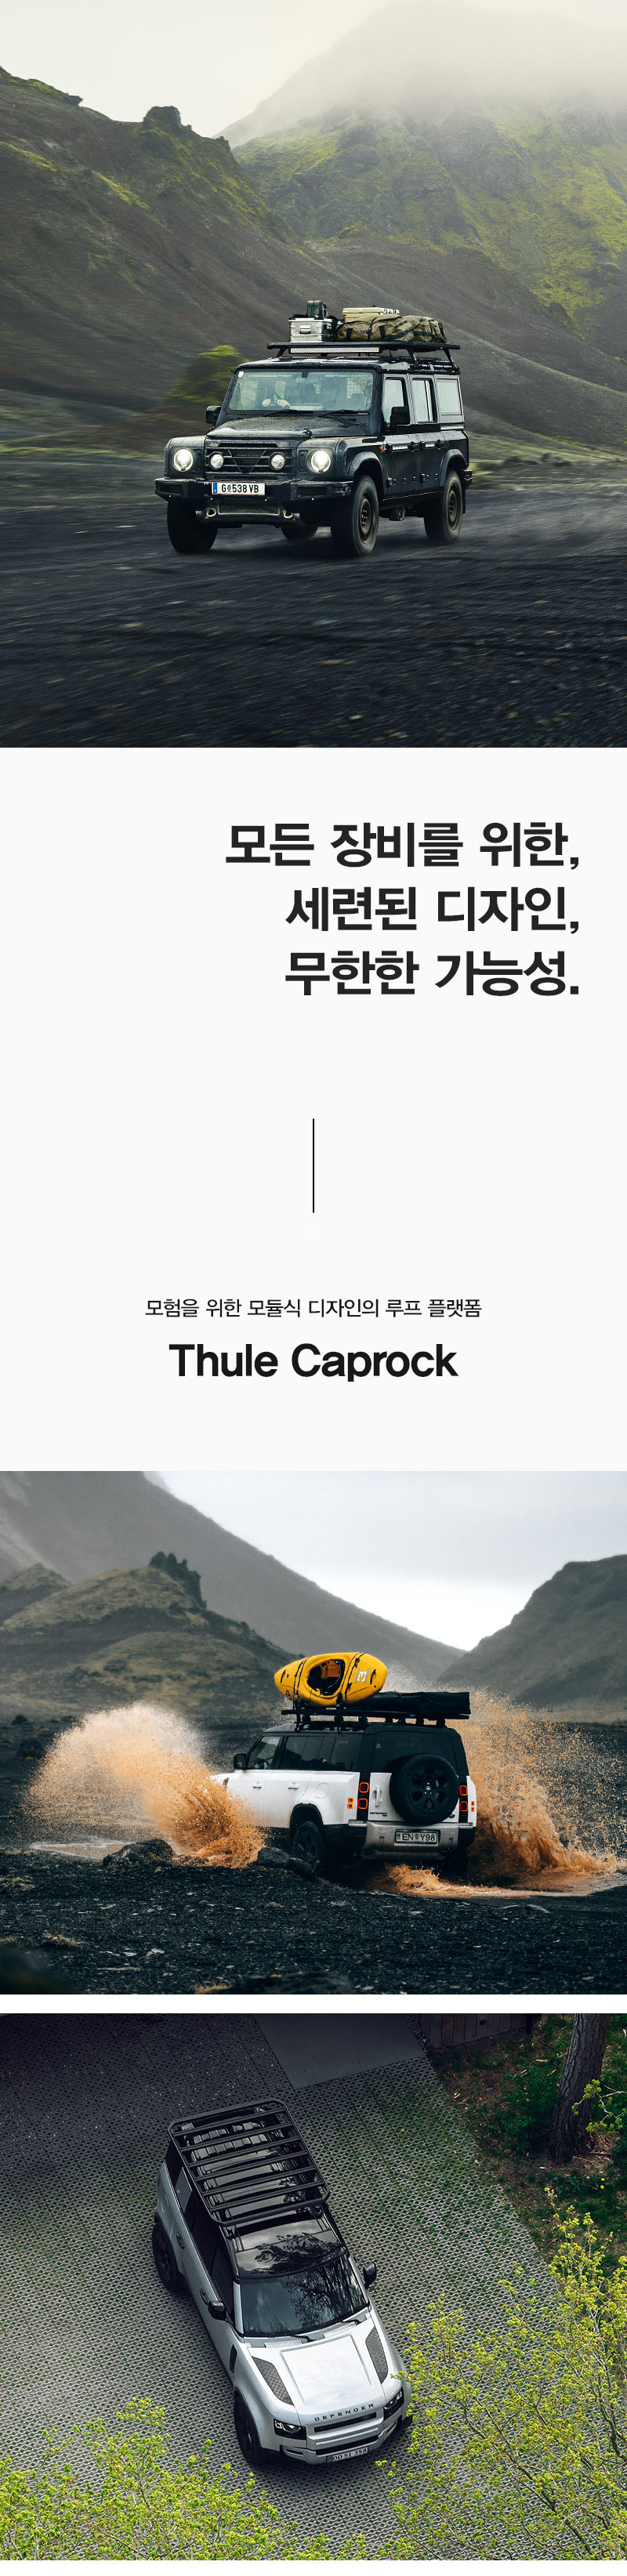 thule-caprock-001.jpg